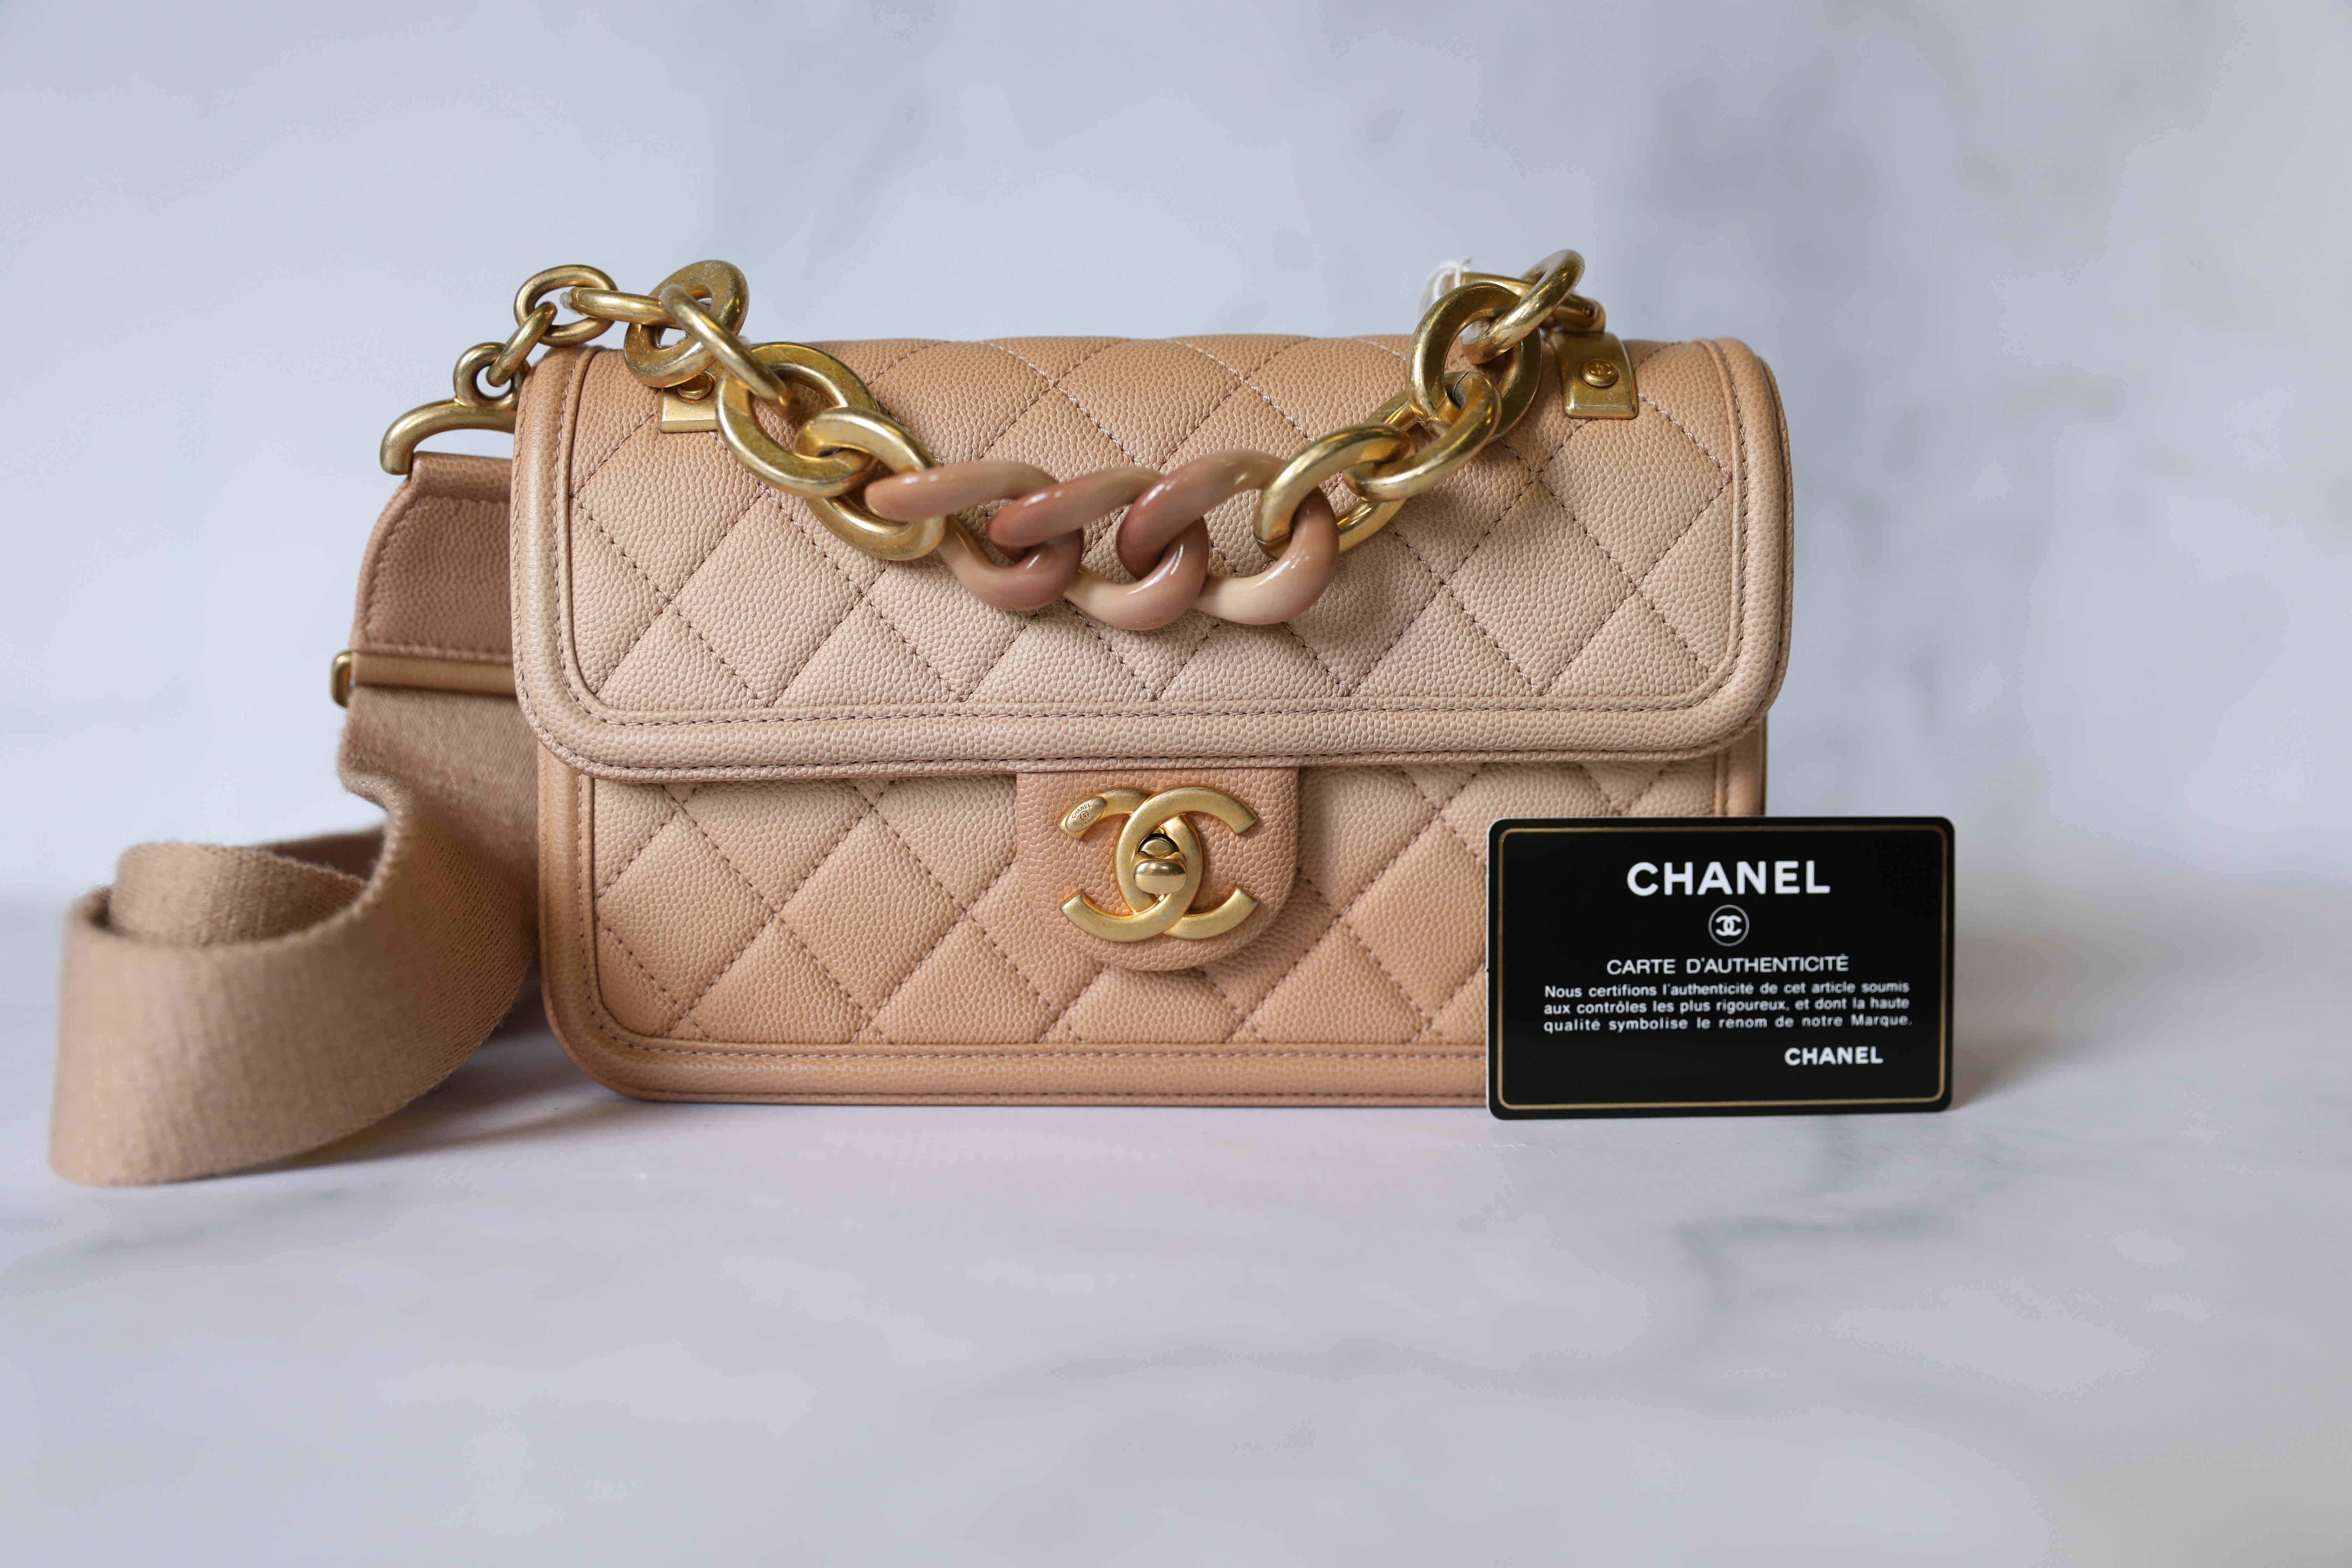 Chanel Cruise 2019 Seasonal Bag Collection, Bragmybag